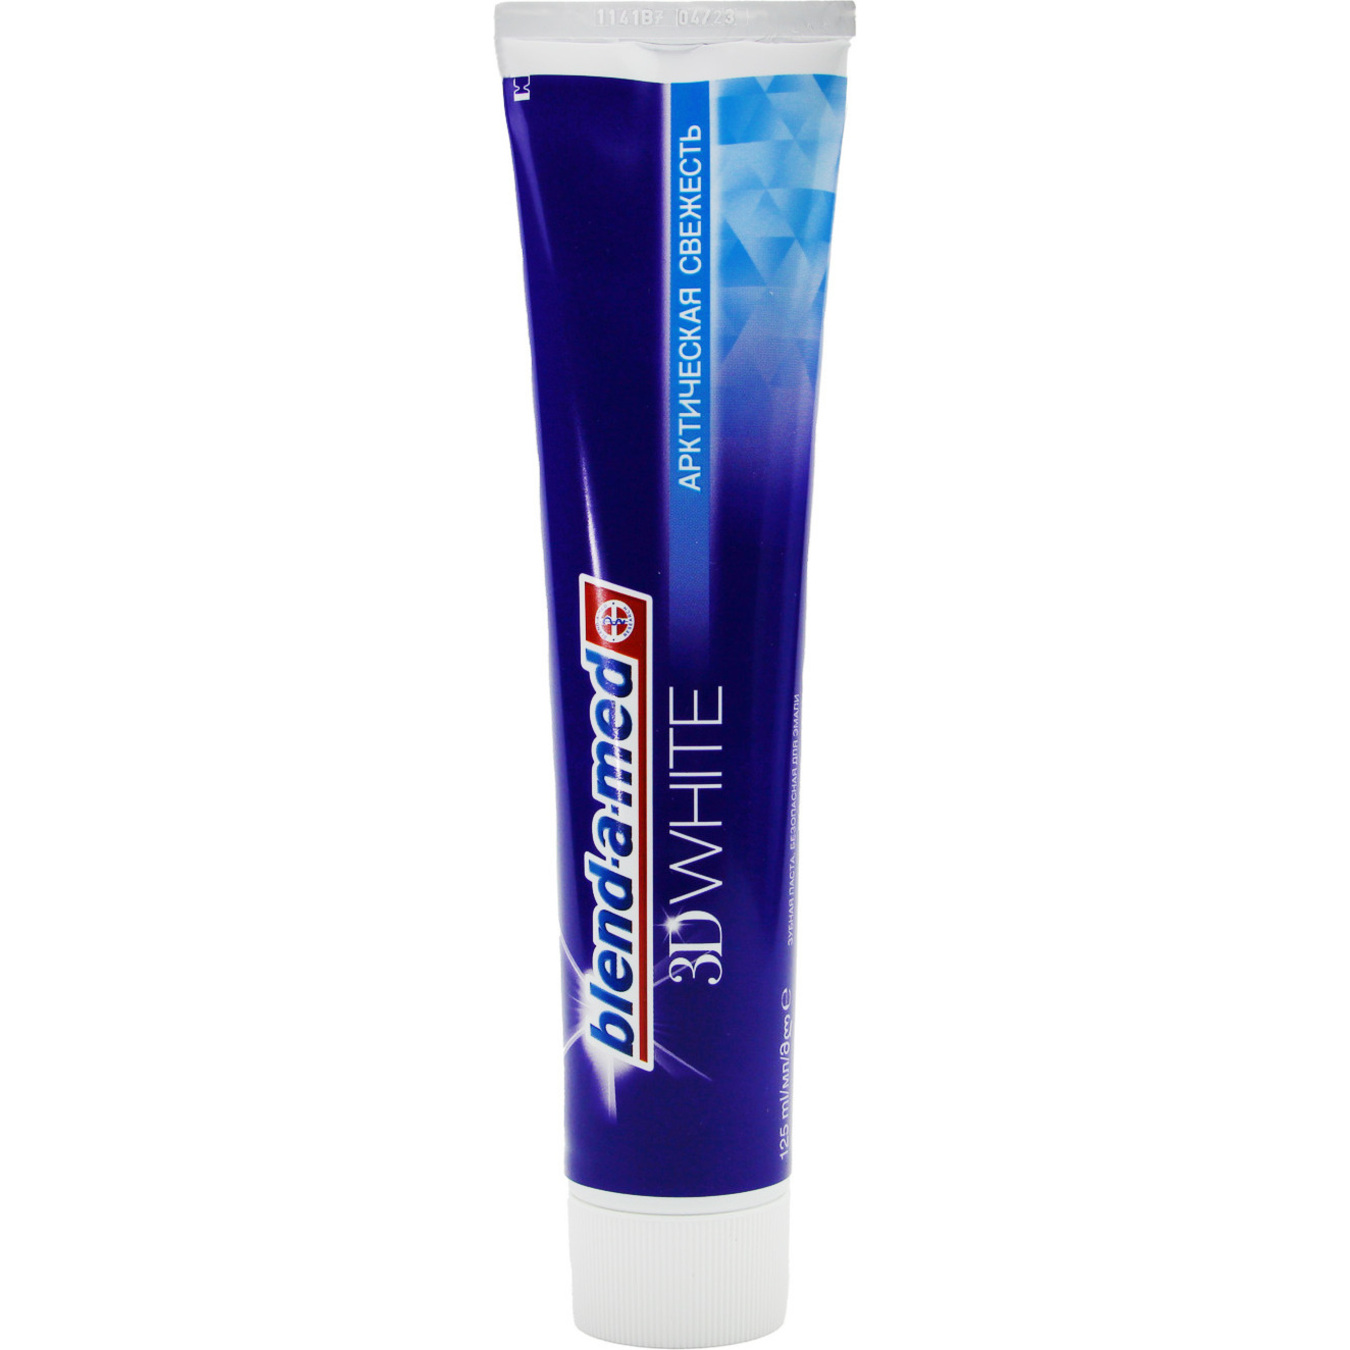 Blend-a-med 3D White Arctic Freshness Toothpaste 100ml 4